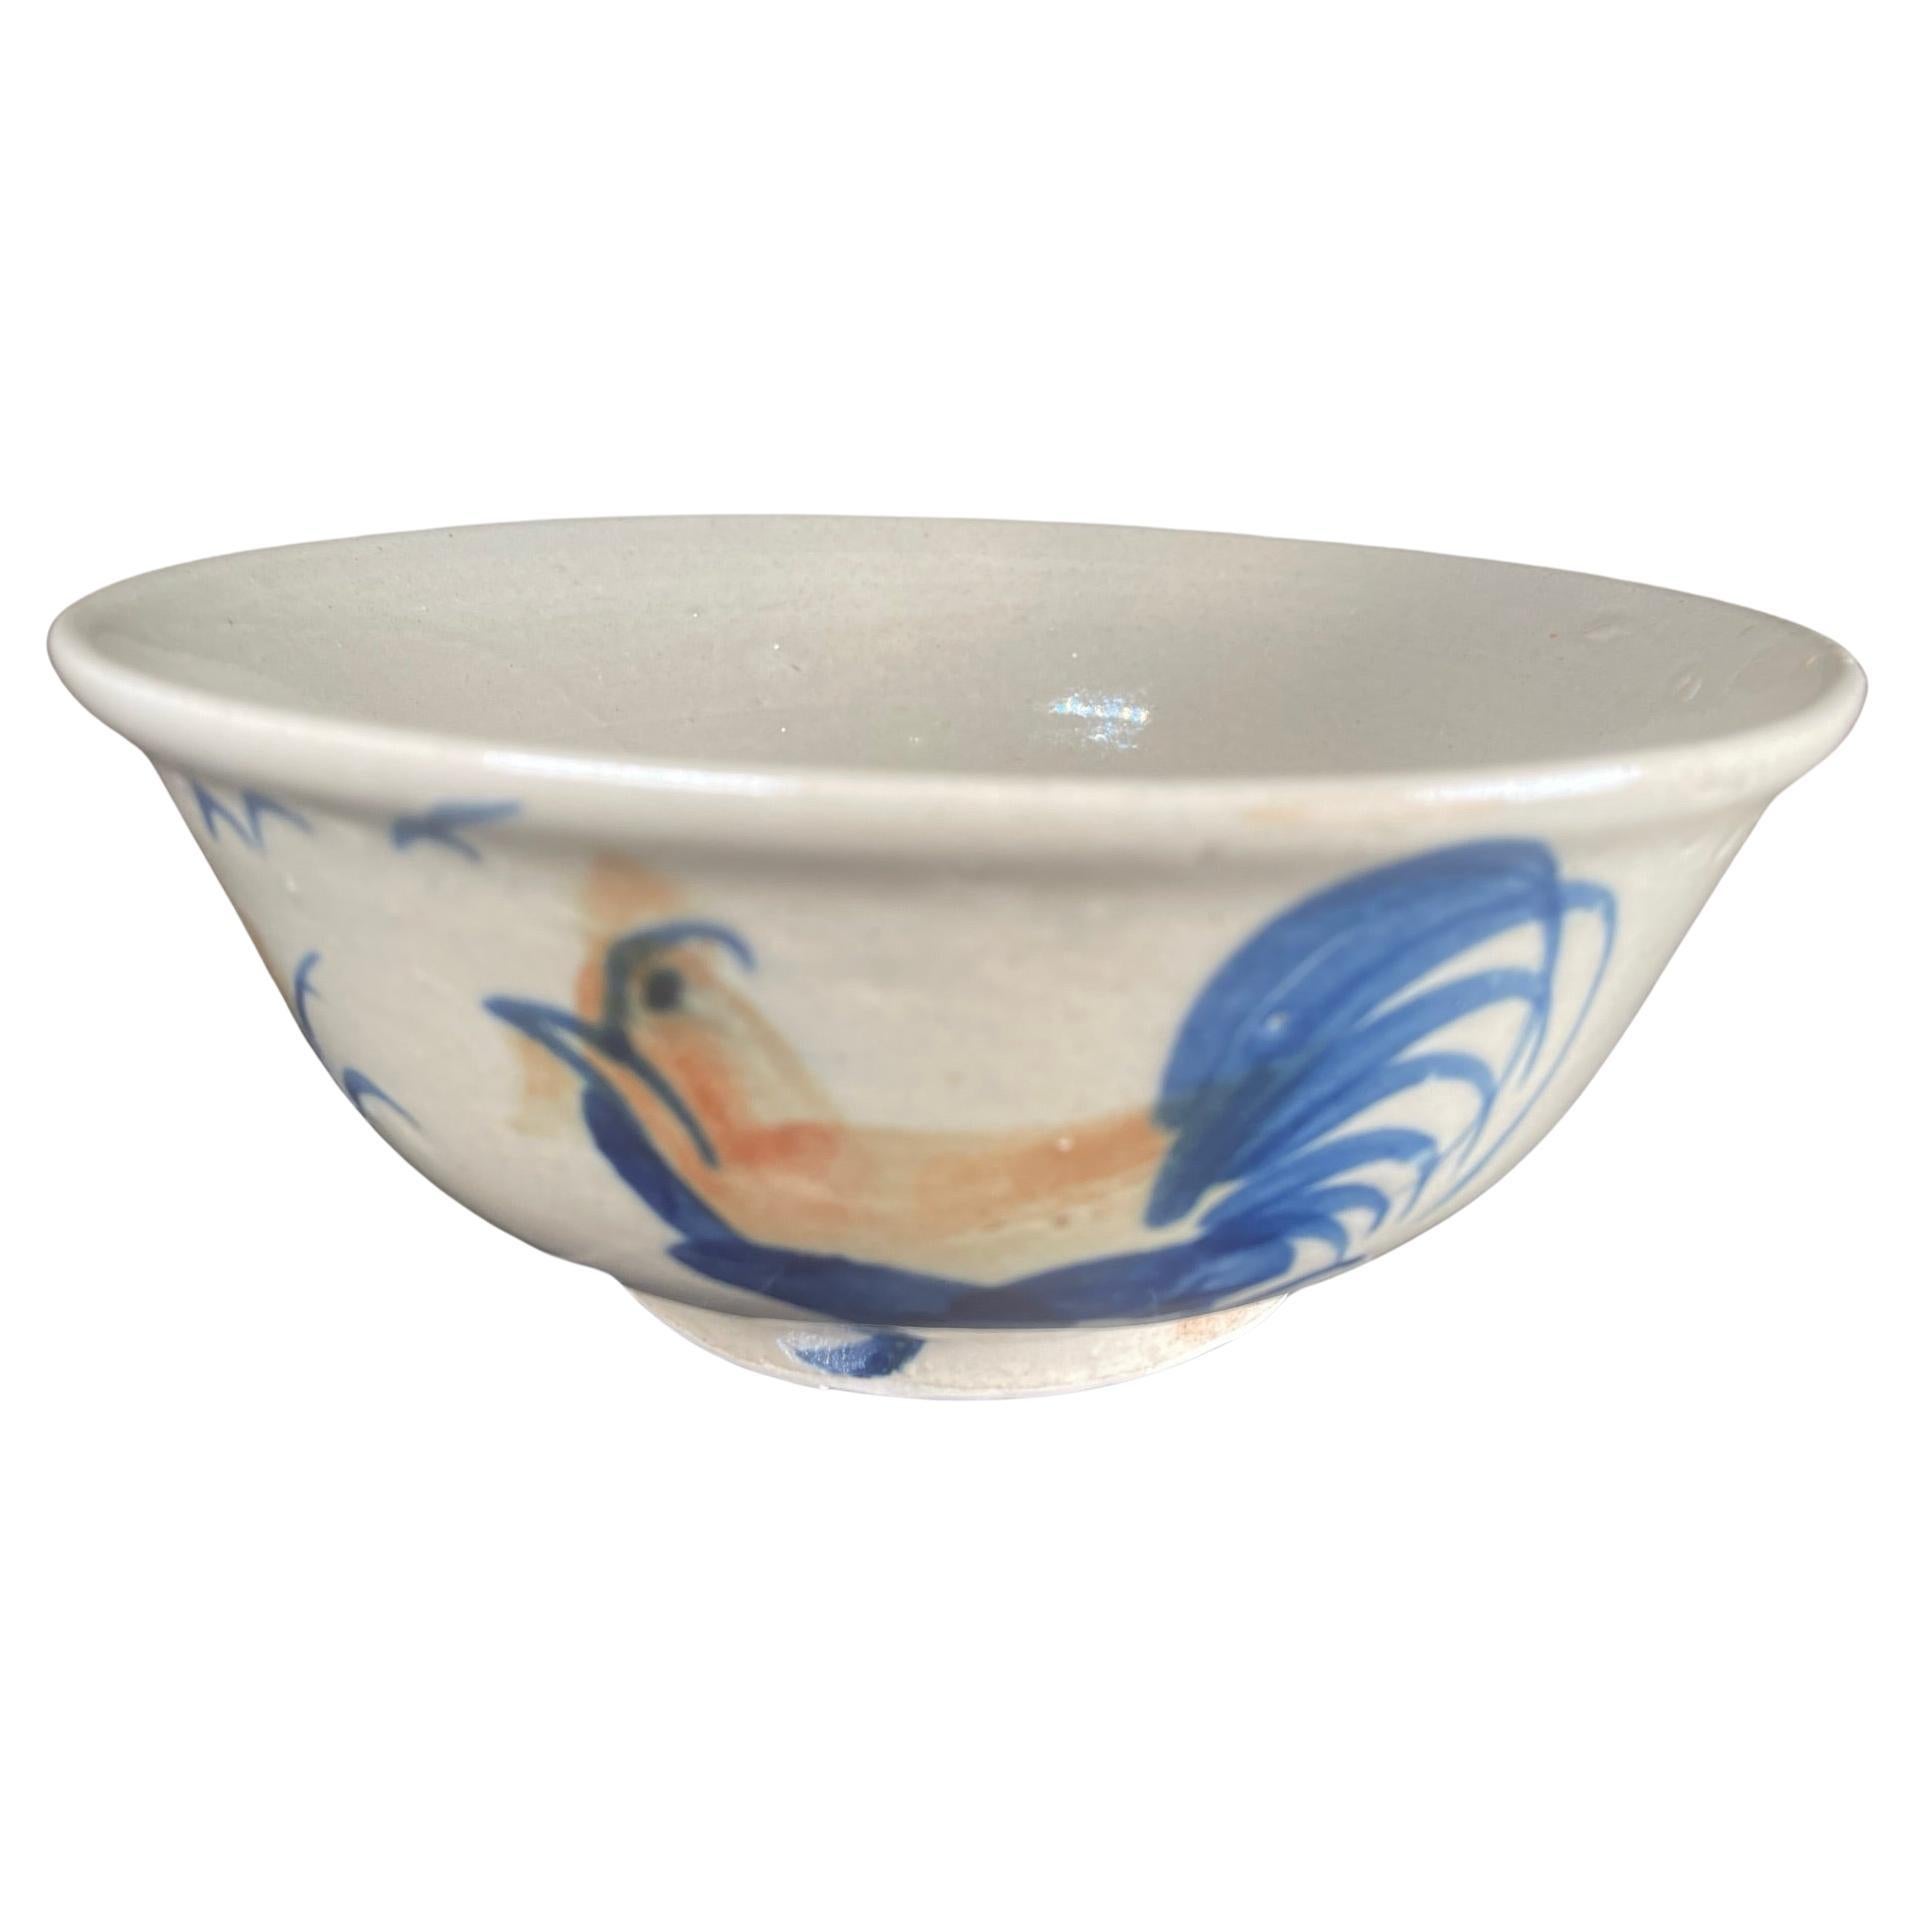 Grand bol à thé japonais « Rooster And Birds », fabriqué à la main et émaillé à la main